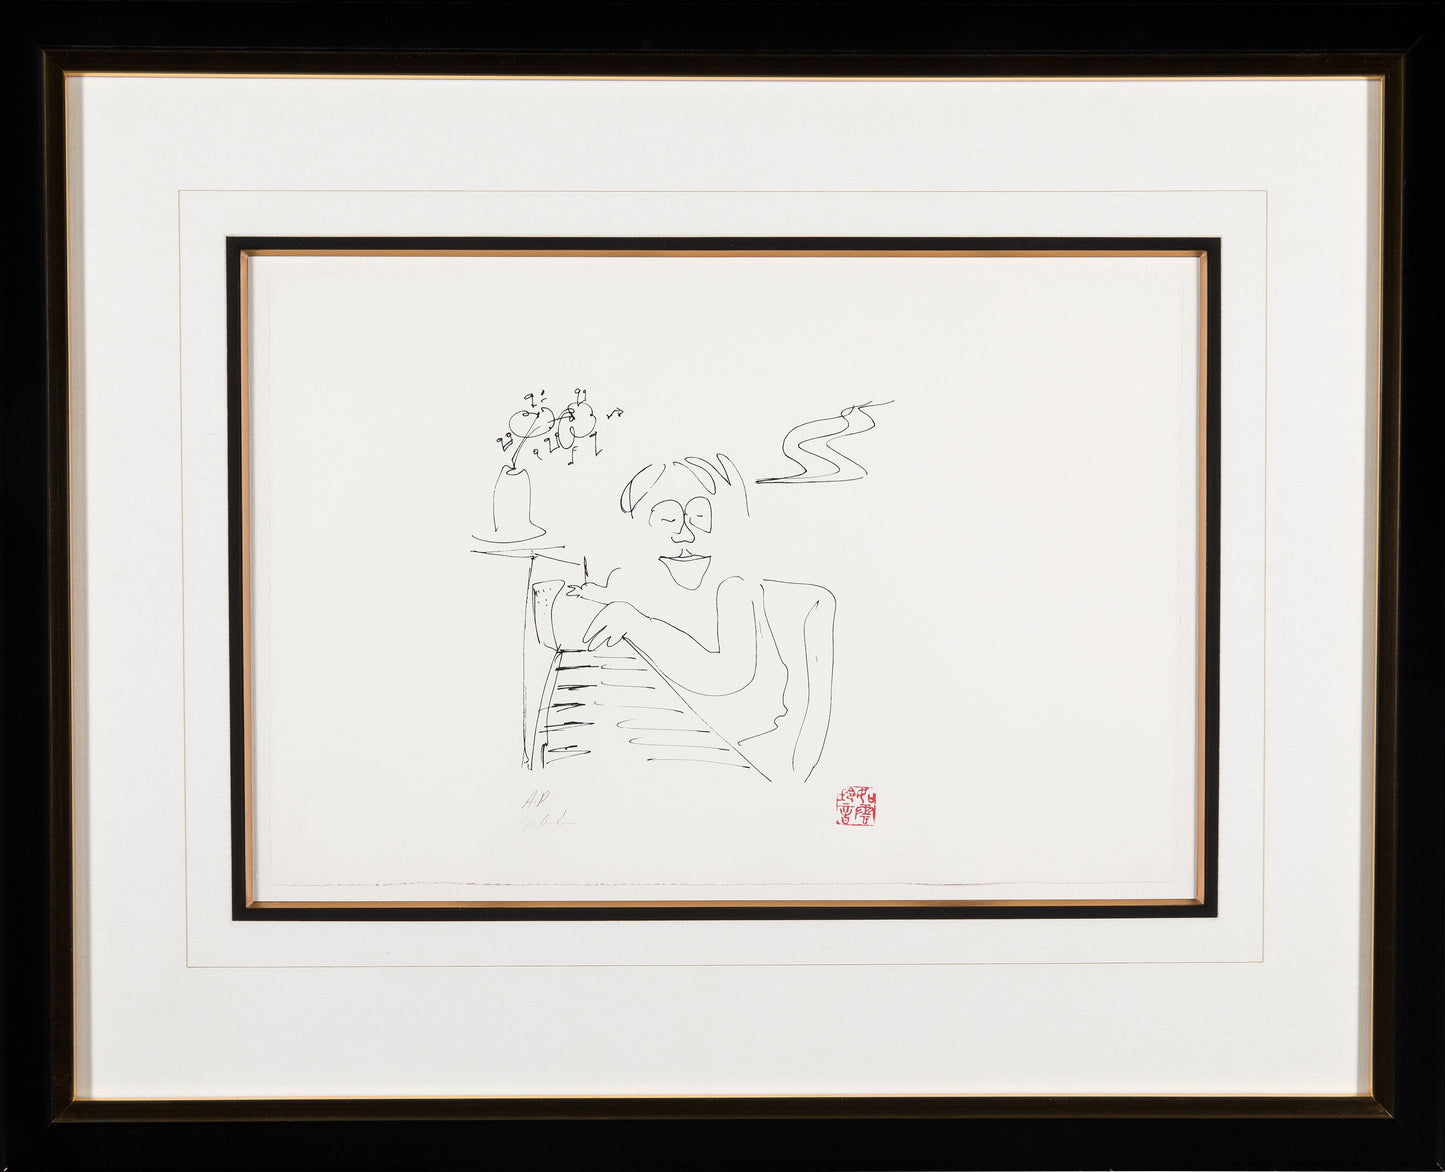 John Lennon Baby Grand Serigraph on Paper 1986 Ltd Ed AP Yoko Ono Signed Framed from Bag One Arts